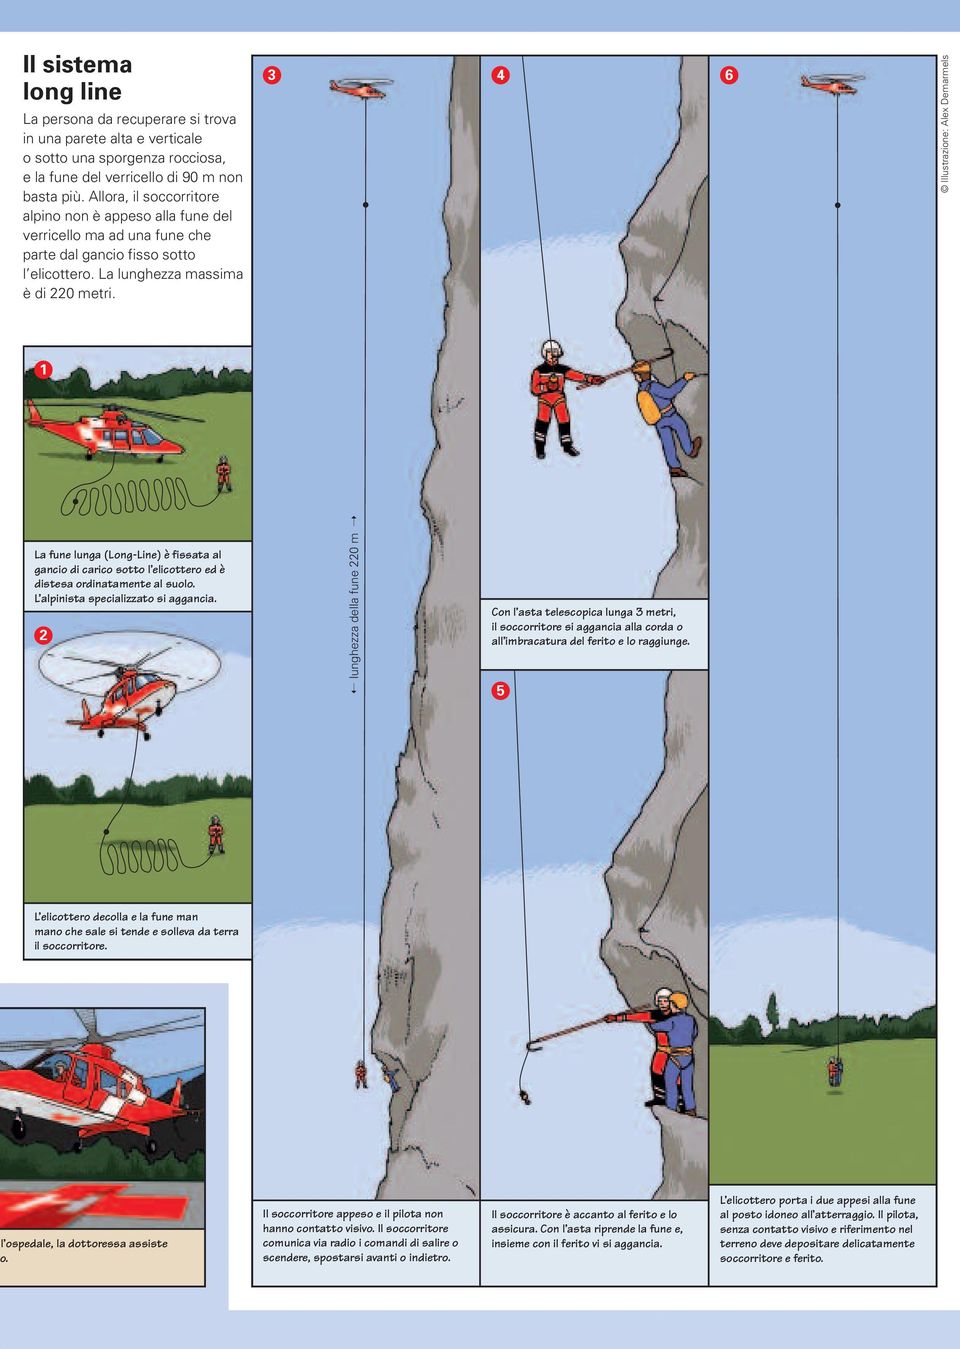 3 4 6 Illustrazione: Alex Demarmels 1 La fune lunga (Long-Line) è fissata al gancio di carico sotto l elicottero ed è distesa ordinatamente al suolo. L alpinista specializzato si aggancia.